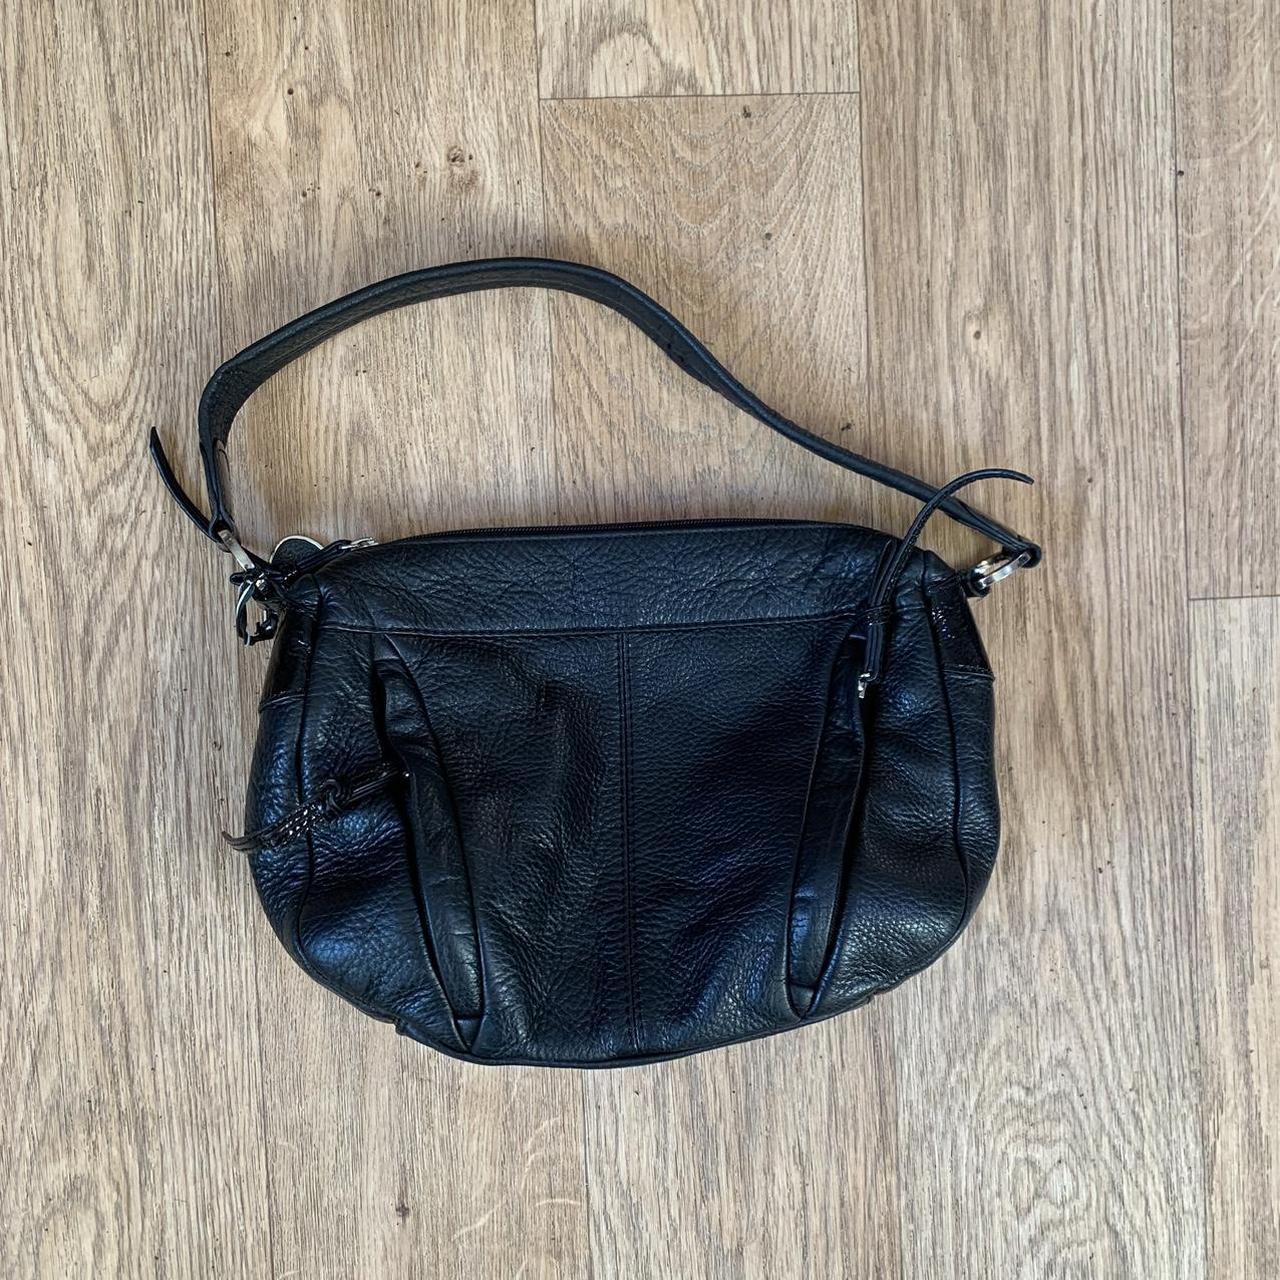 Vintage Y2K Tula Black leather bag Excellent vintage... - Depop